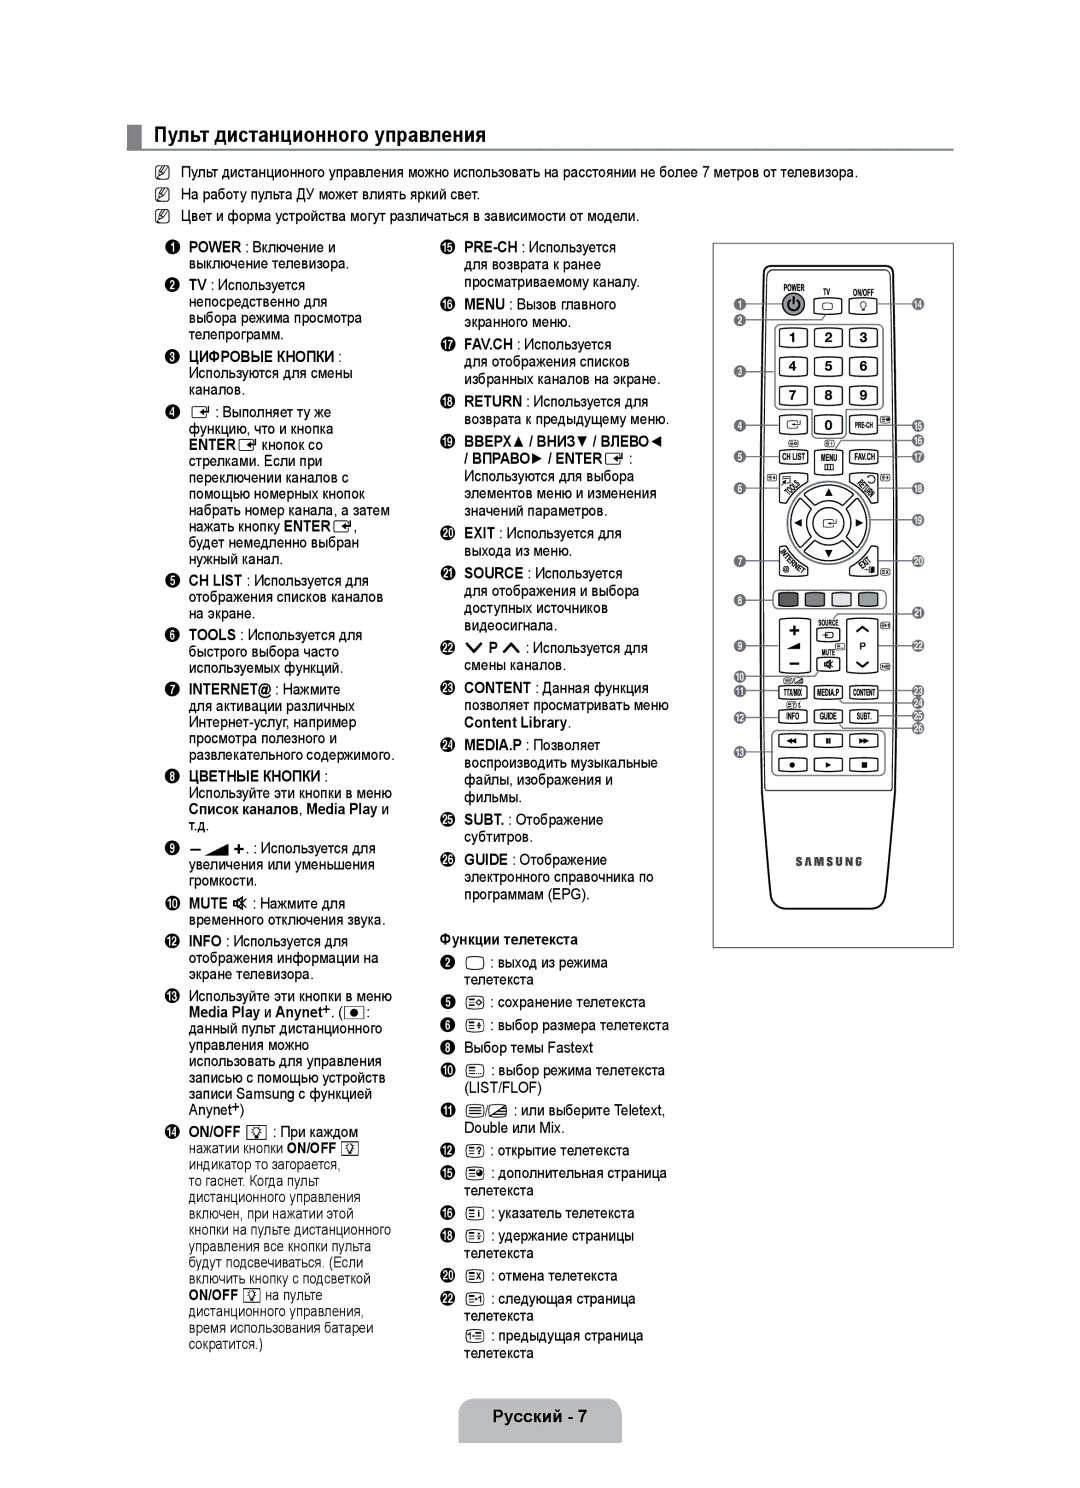 Samsung UE40B7000WWXZG manual Пульт дистанционного управления, Цифровые Кнопки, Вверх / Вниз / Влево, Вправо / Entere 